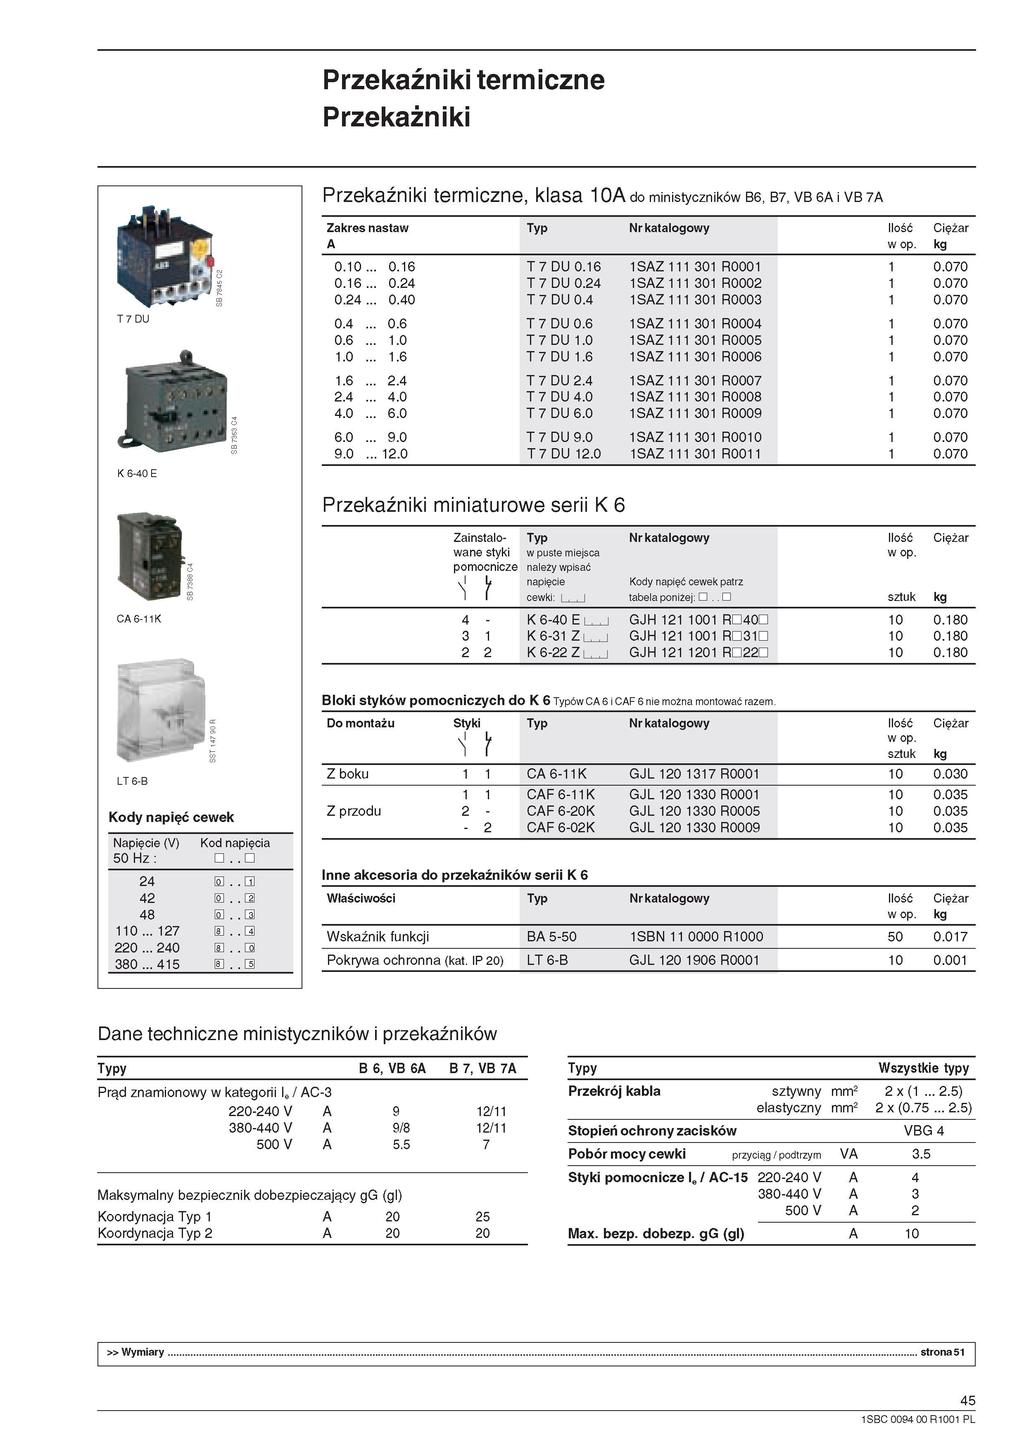 Przekaźniki termiczne Przekaźniki Przekaźniki termiczne, klasa do ministyczników B6, B7, VB 6 I VB 7 T7DU J*Jl O Zakres nastaw 0. 0.24 0.40 0.6.0.6 2.4 4.0 6.0 9.0 2.0 T7DU0. T 7 DU 0.24 T7DU0.